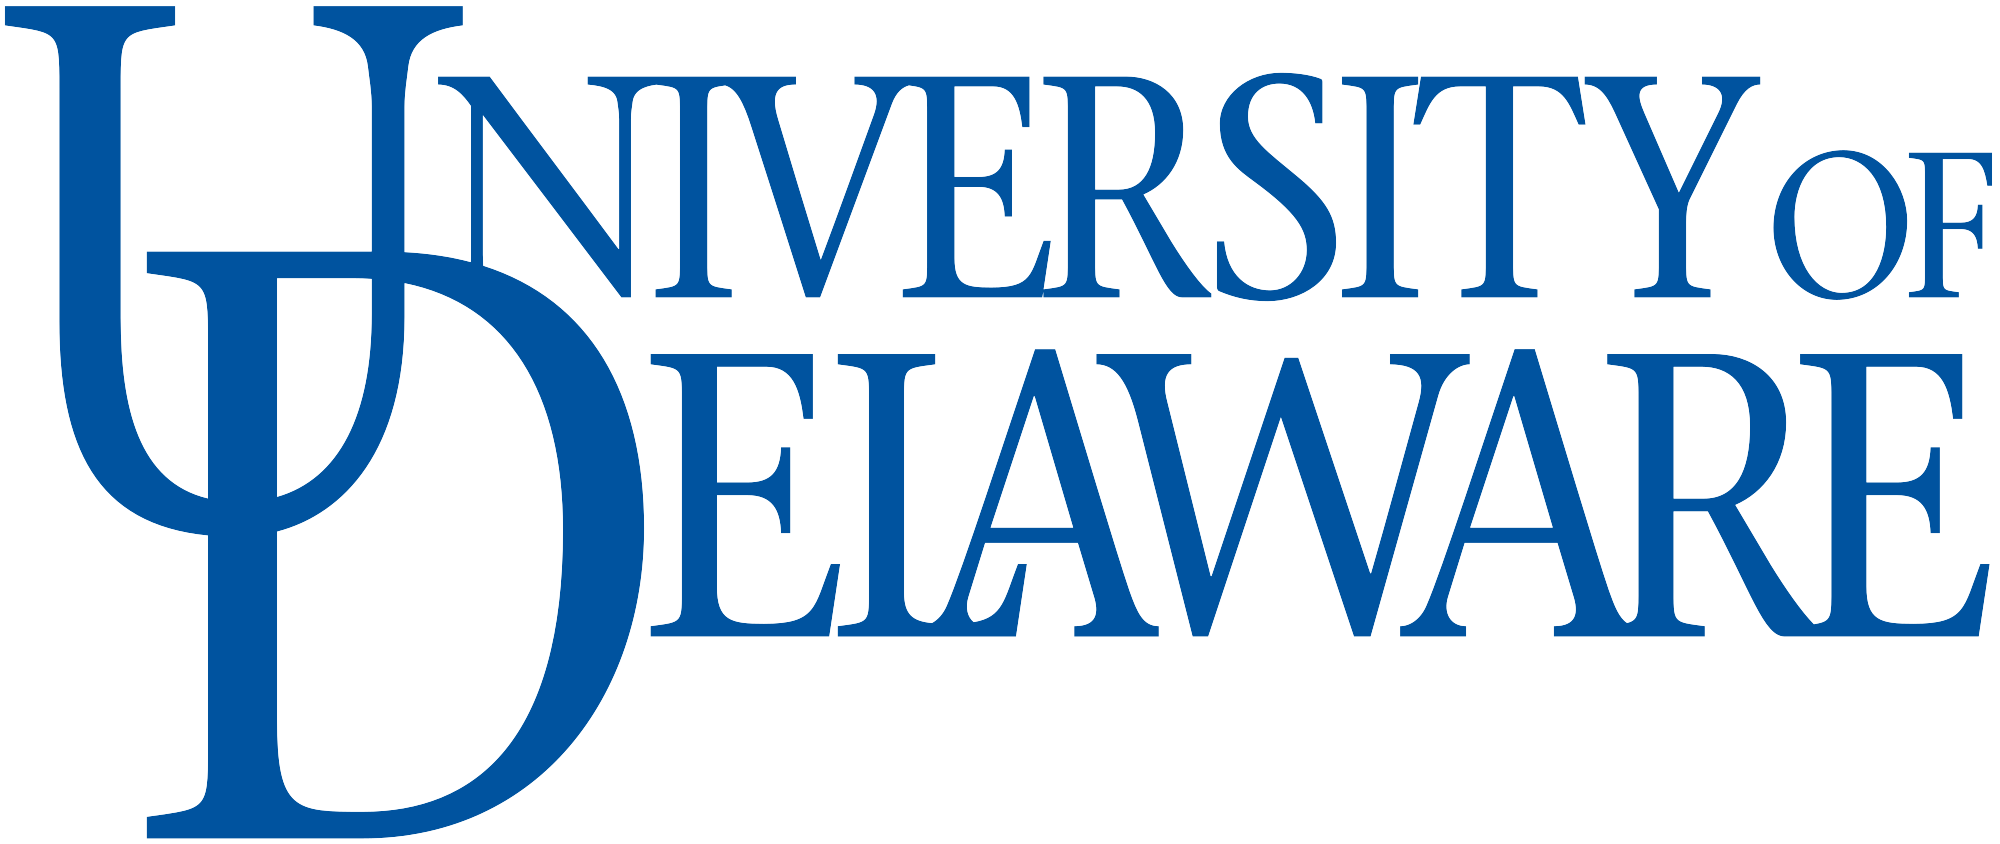 sociology Delaware logo